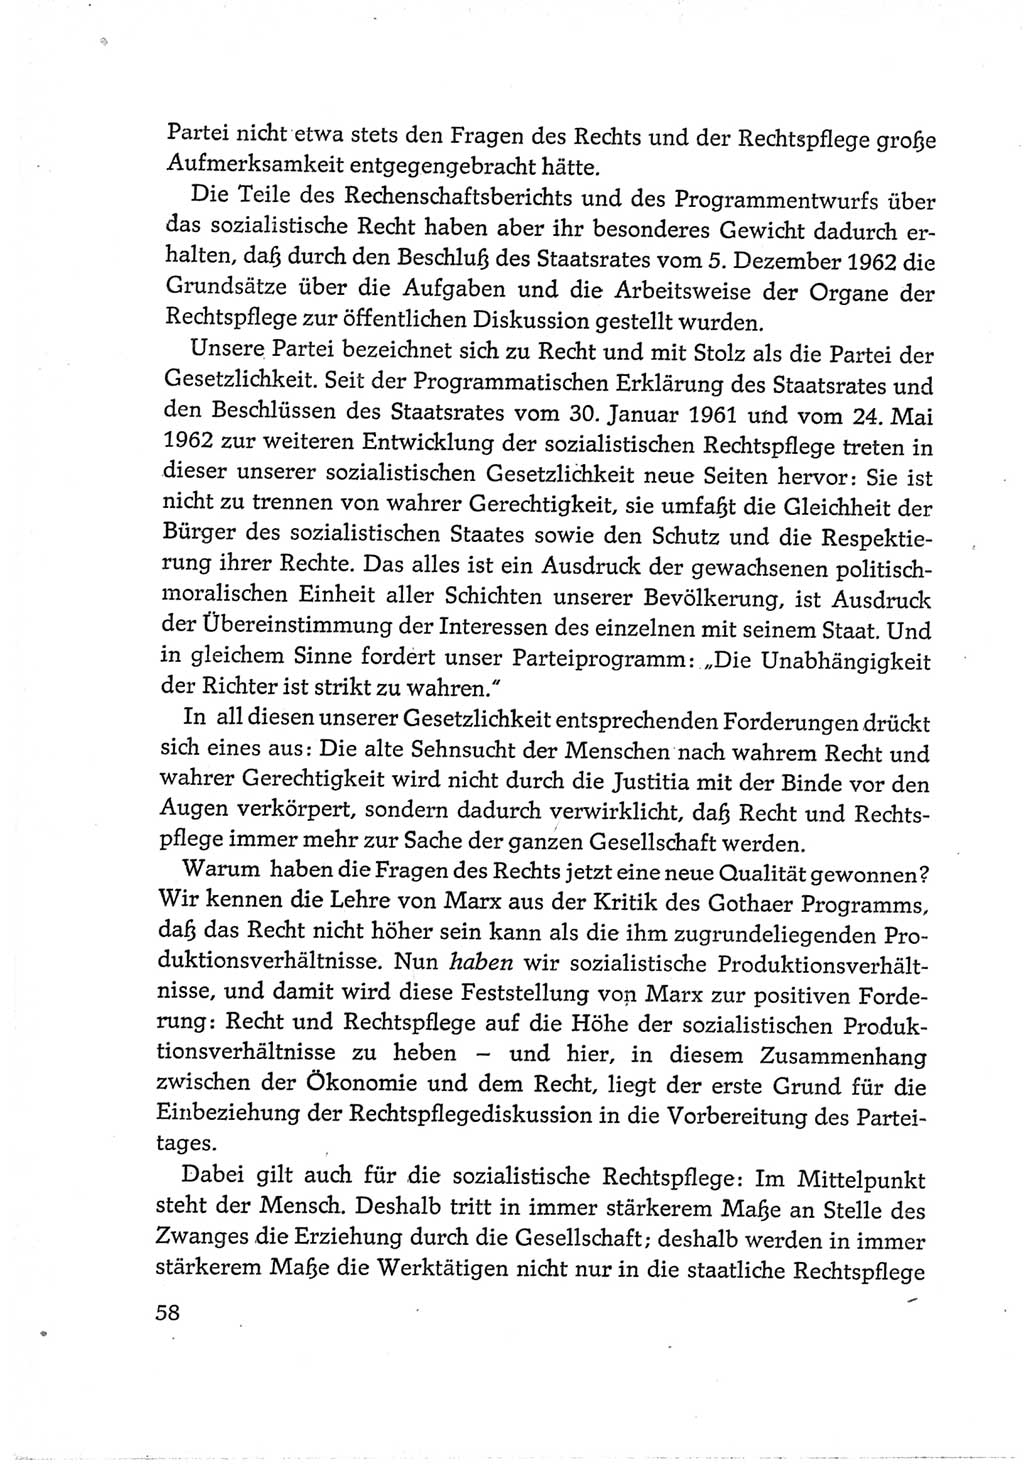 Protokoll der Verhandlungen des Ⅵ. Parteitages der Sozialistischen Einheitspartei Deutschlands (SED) [Deutsche Demokratische Republik (DDR)] 1963, Band Ⅲ, Seite 58 (Prot. Verh. Ⅵ. PT SED DDR 1963, Bd. Ⅲ, S. 58)